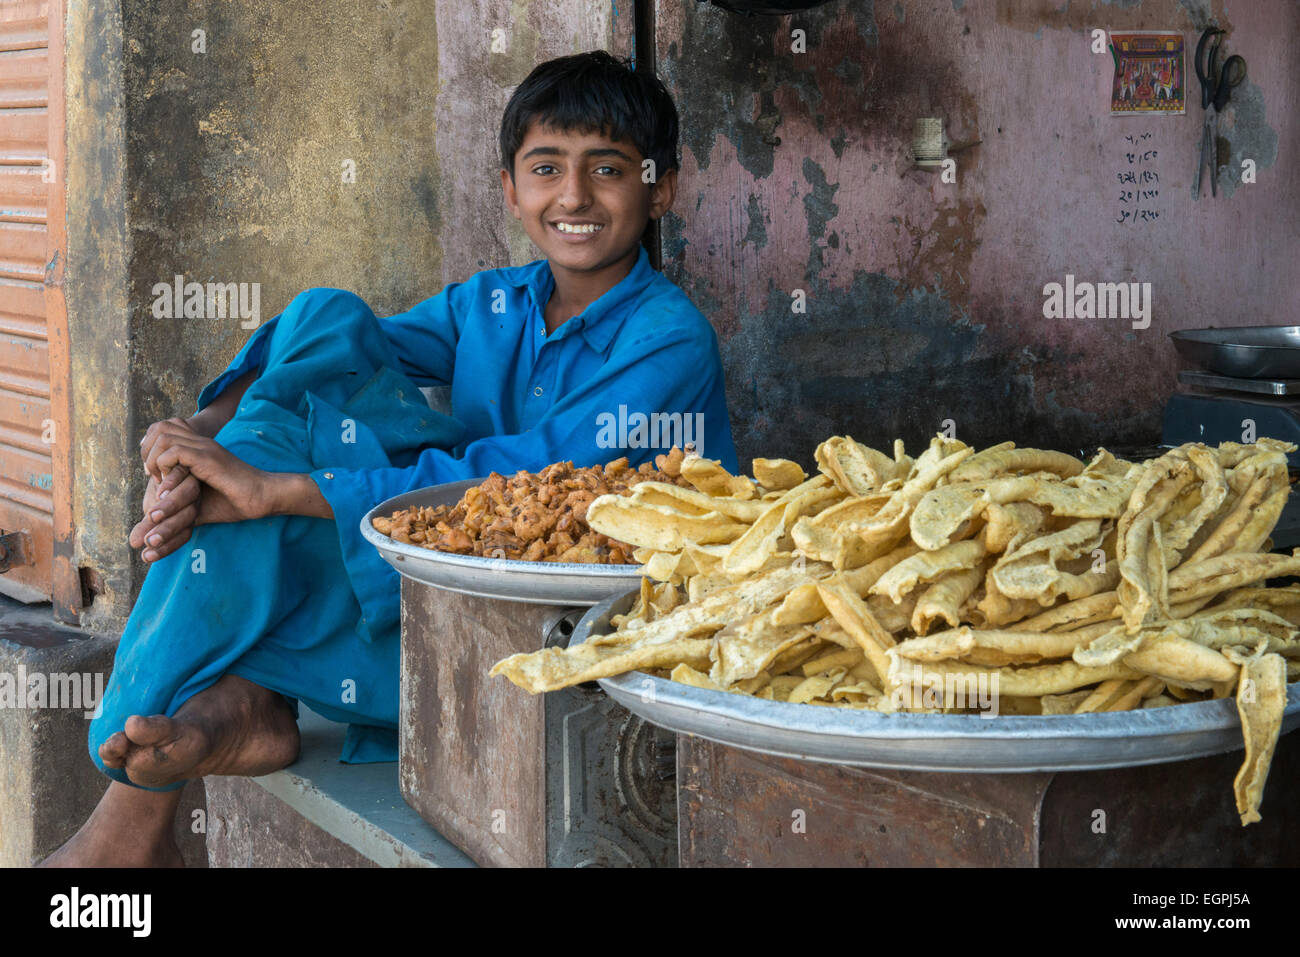 Dans le bazar d'un village, un garçon vend des boulettes sur la rue. Banque D'Images